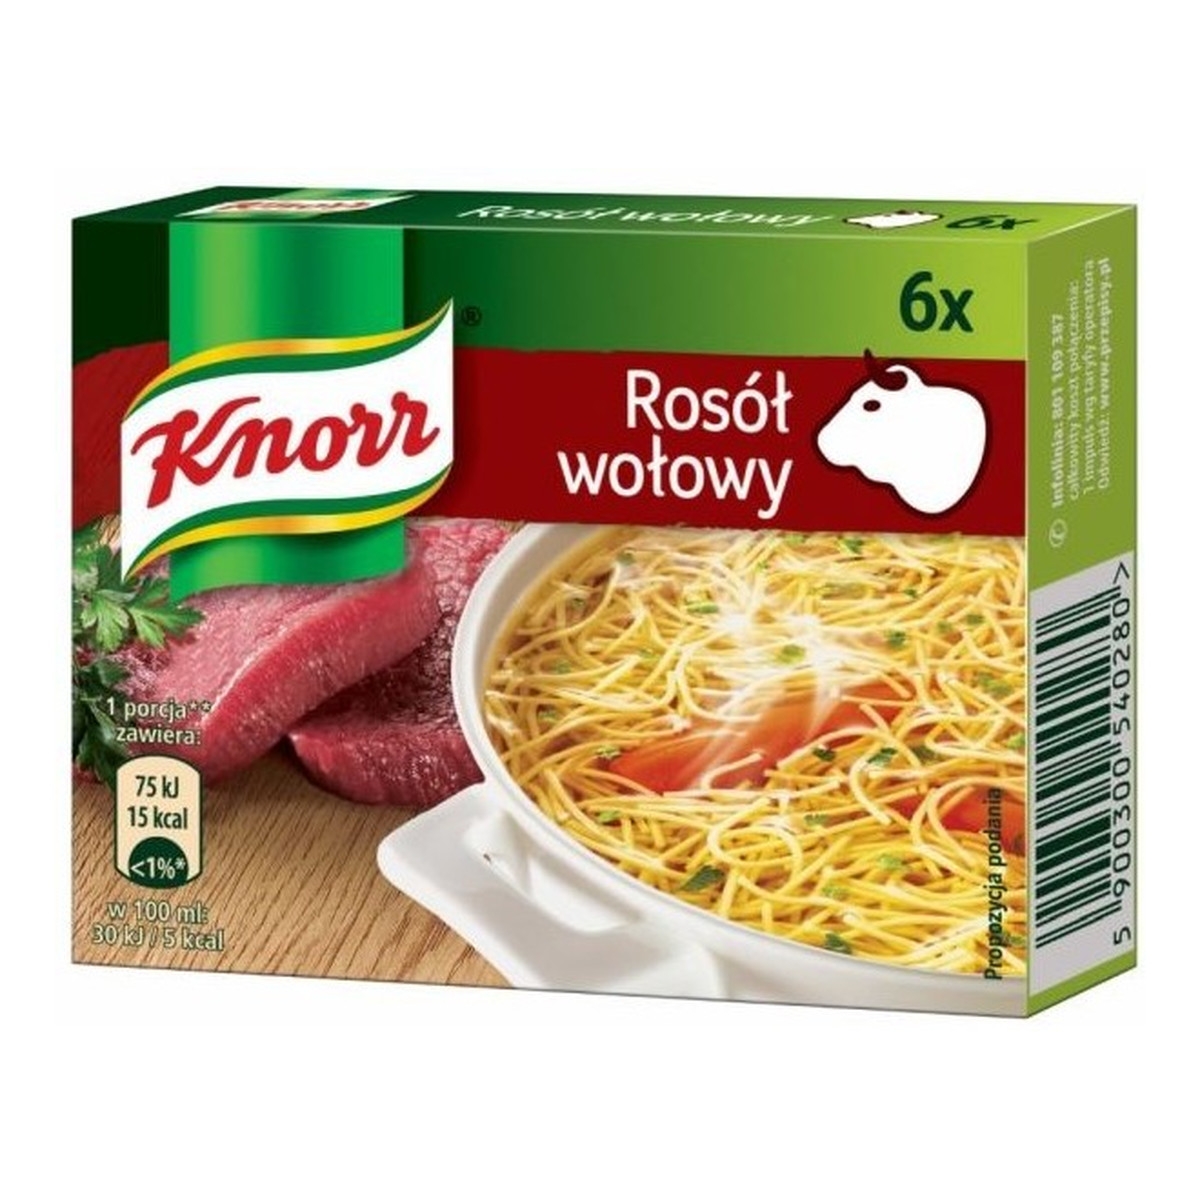 Knorr Rosół wołowy 6x10g 60g